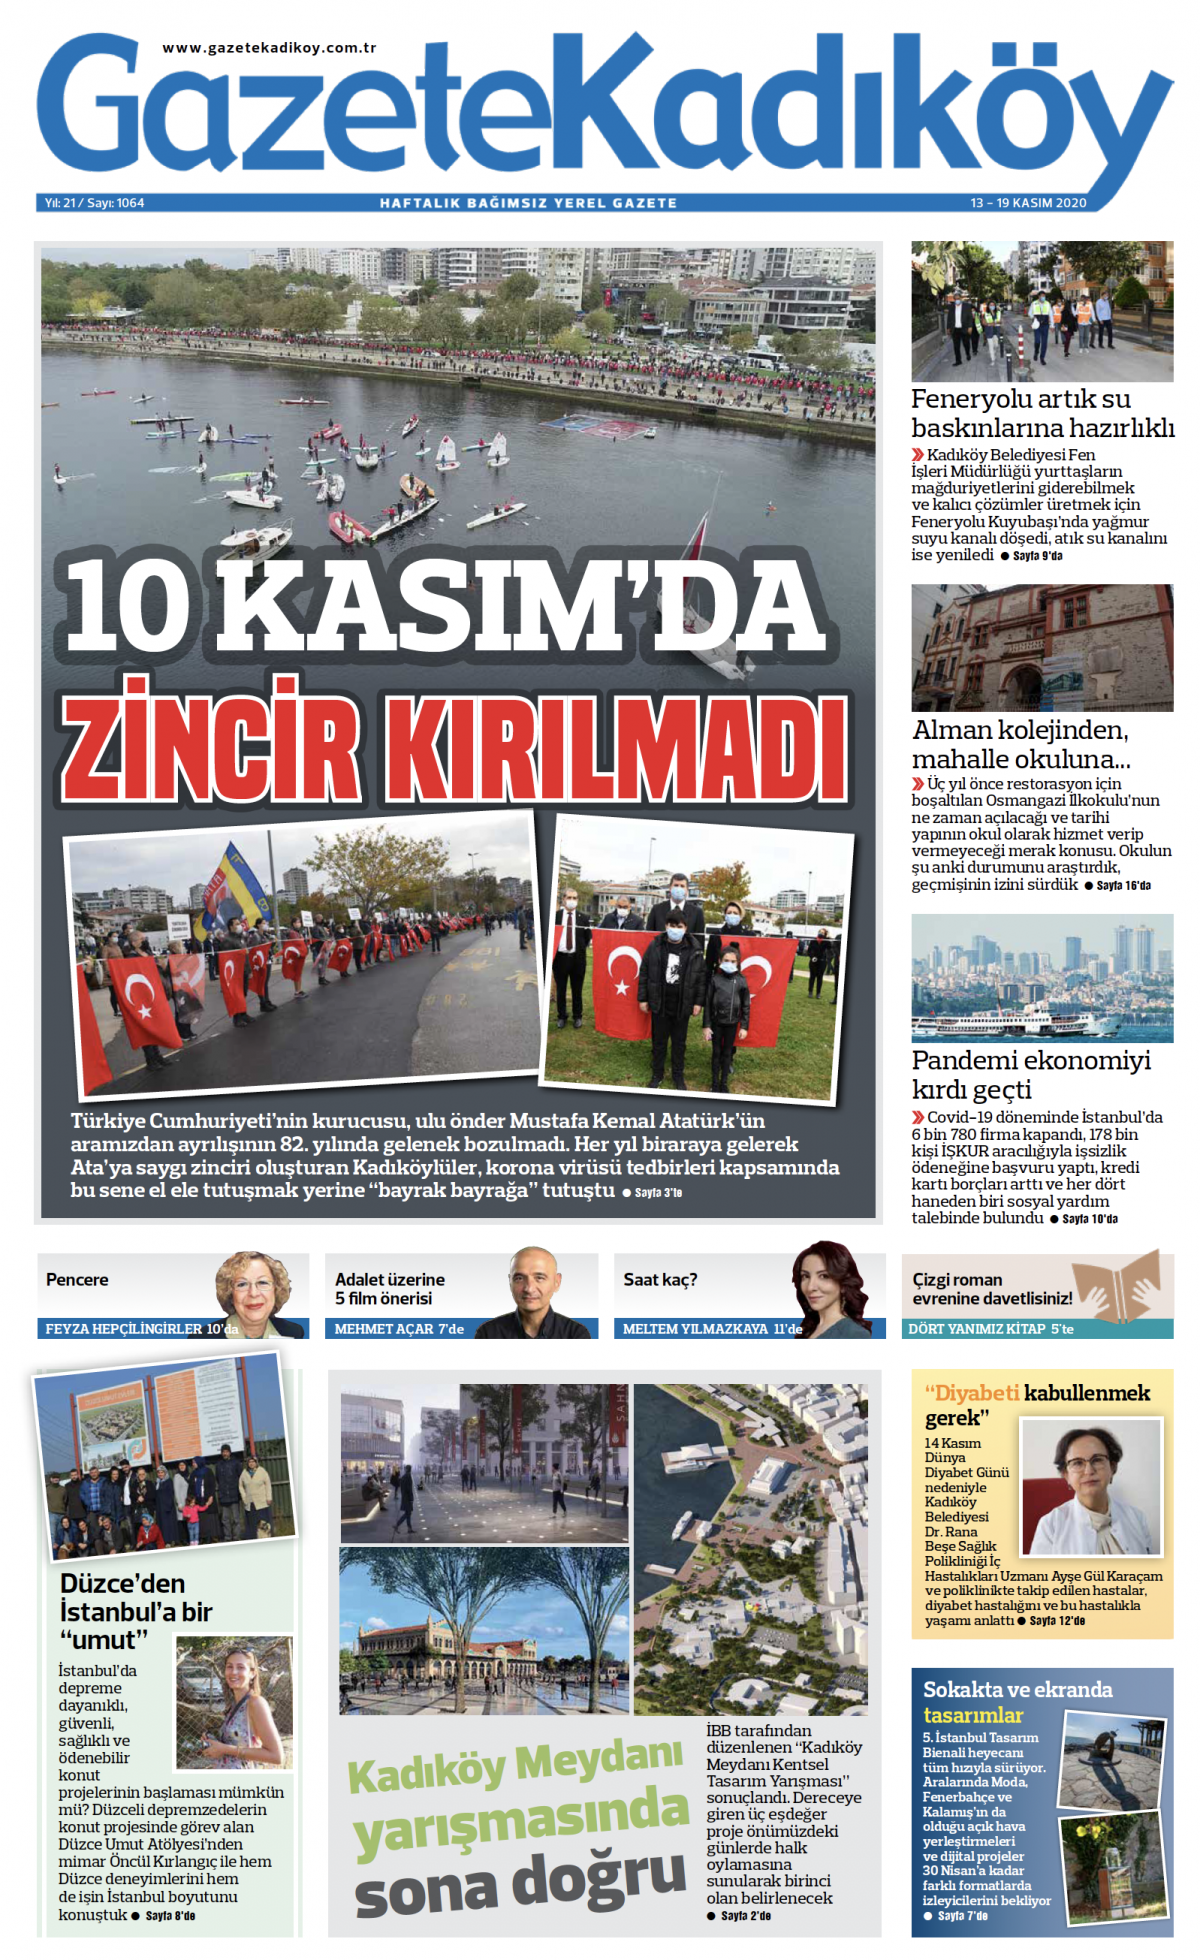 Gazete Kadıköy - 1064.Sayı